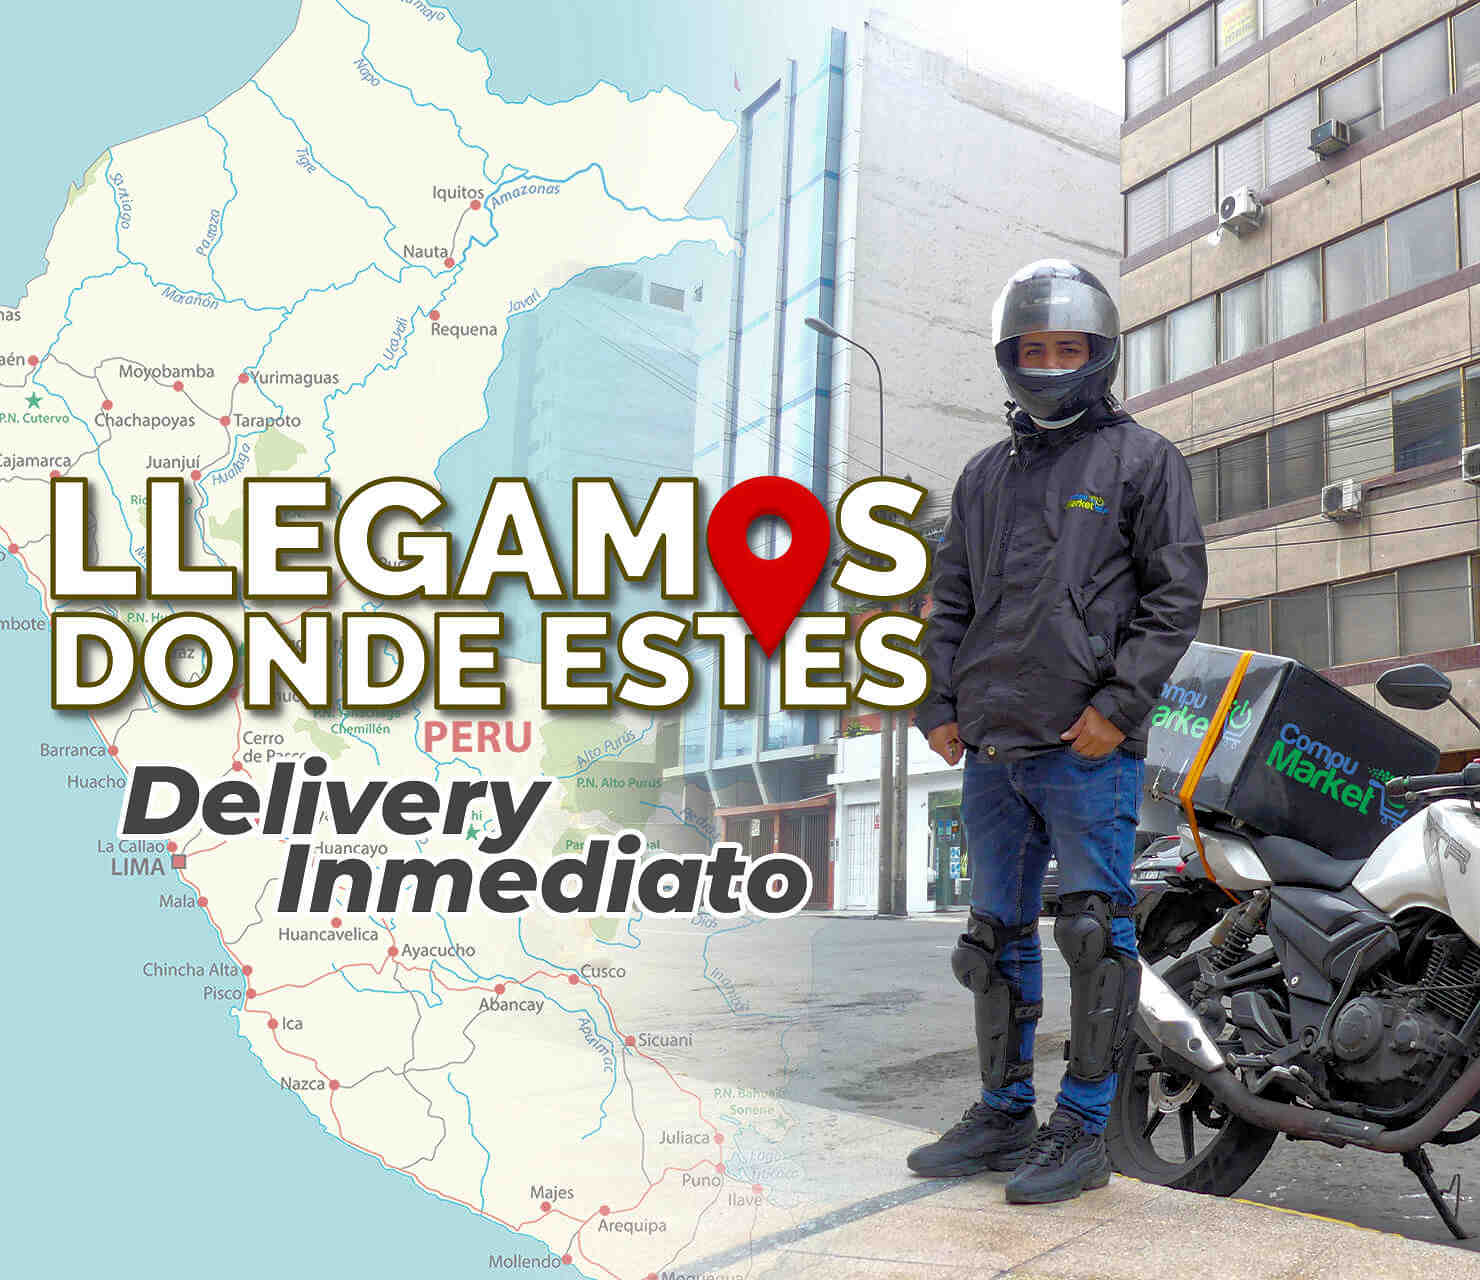 Delivery en 24 Horas en Lima y a todo el Peru